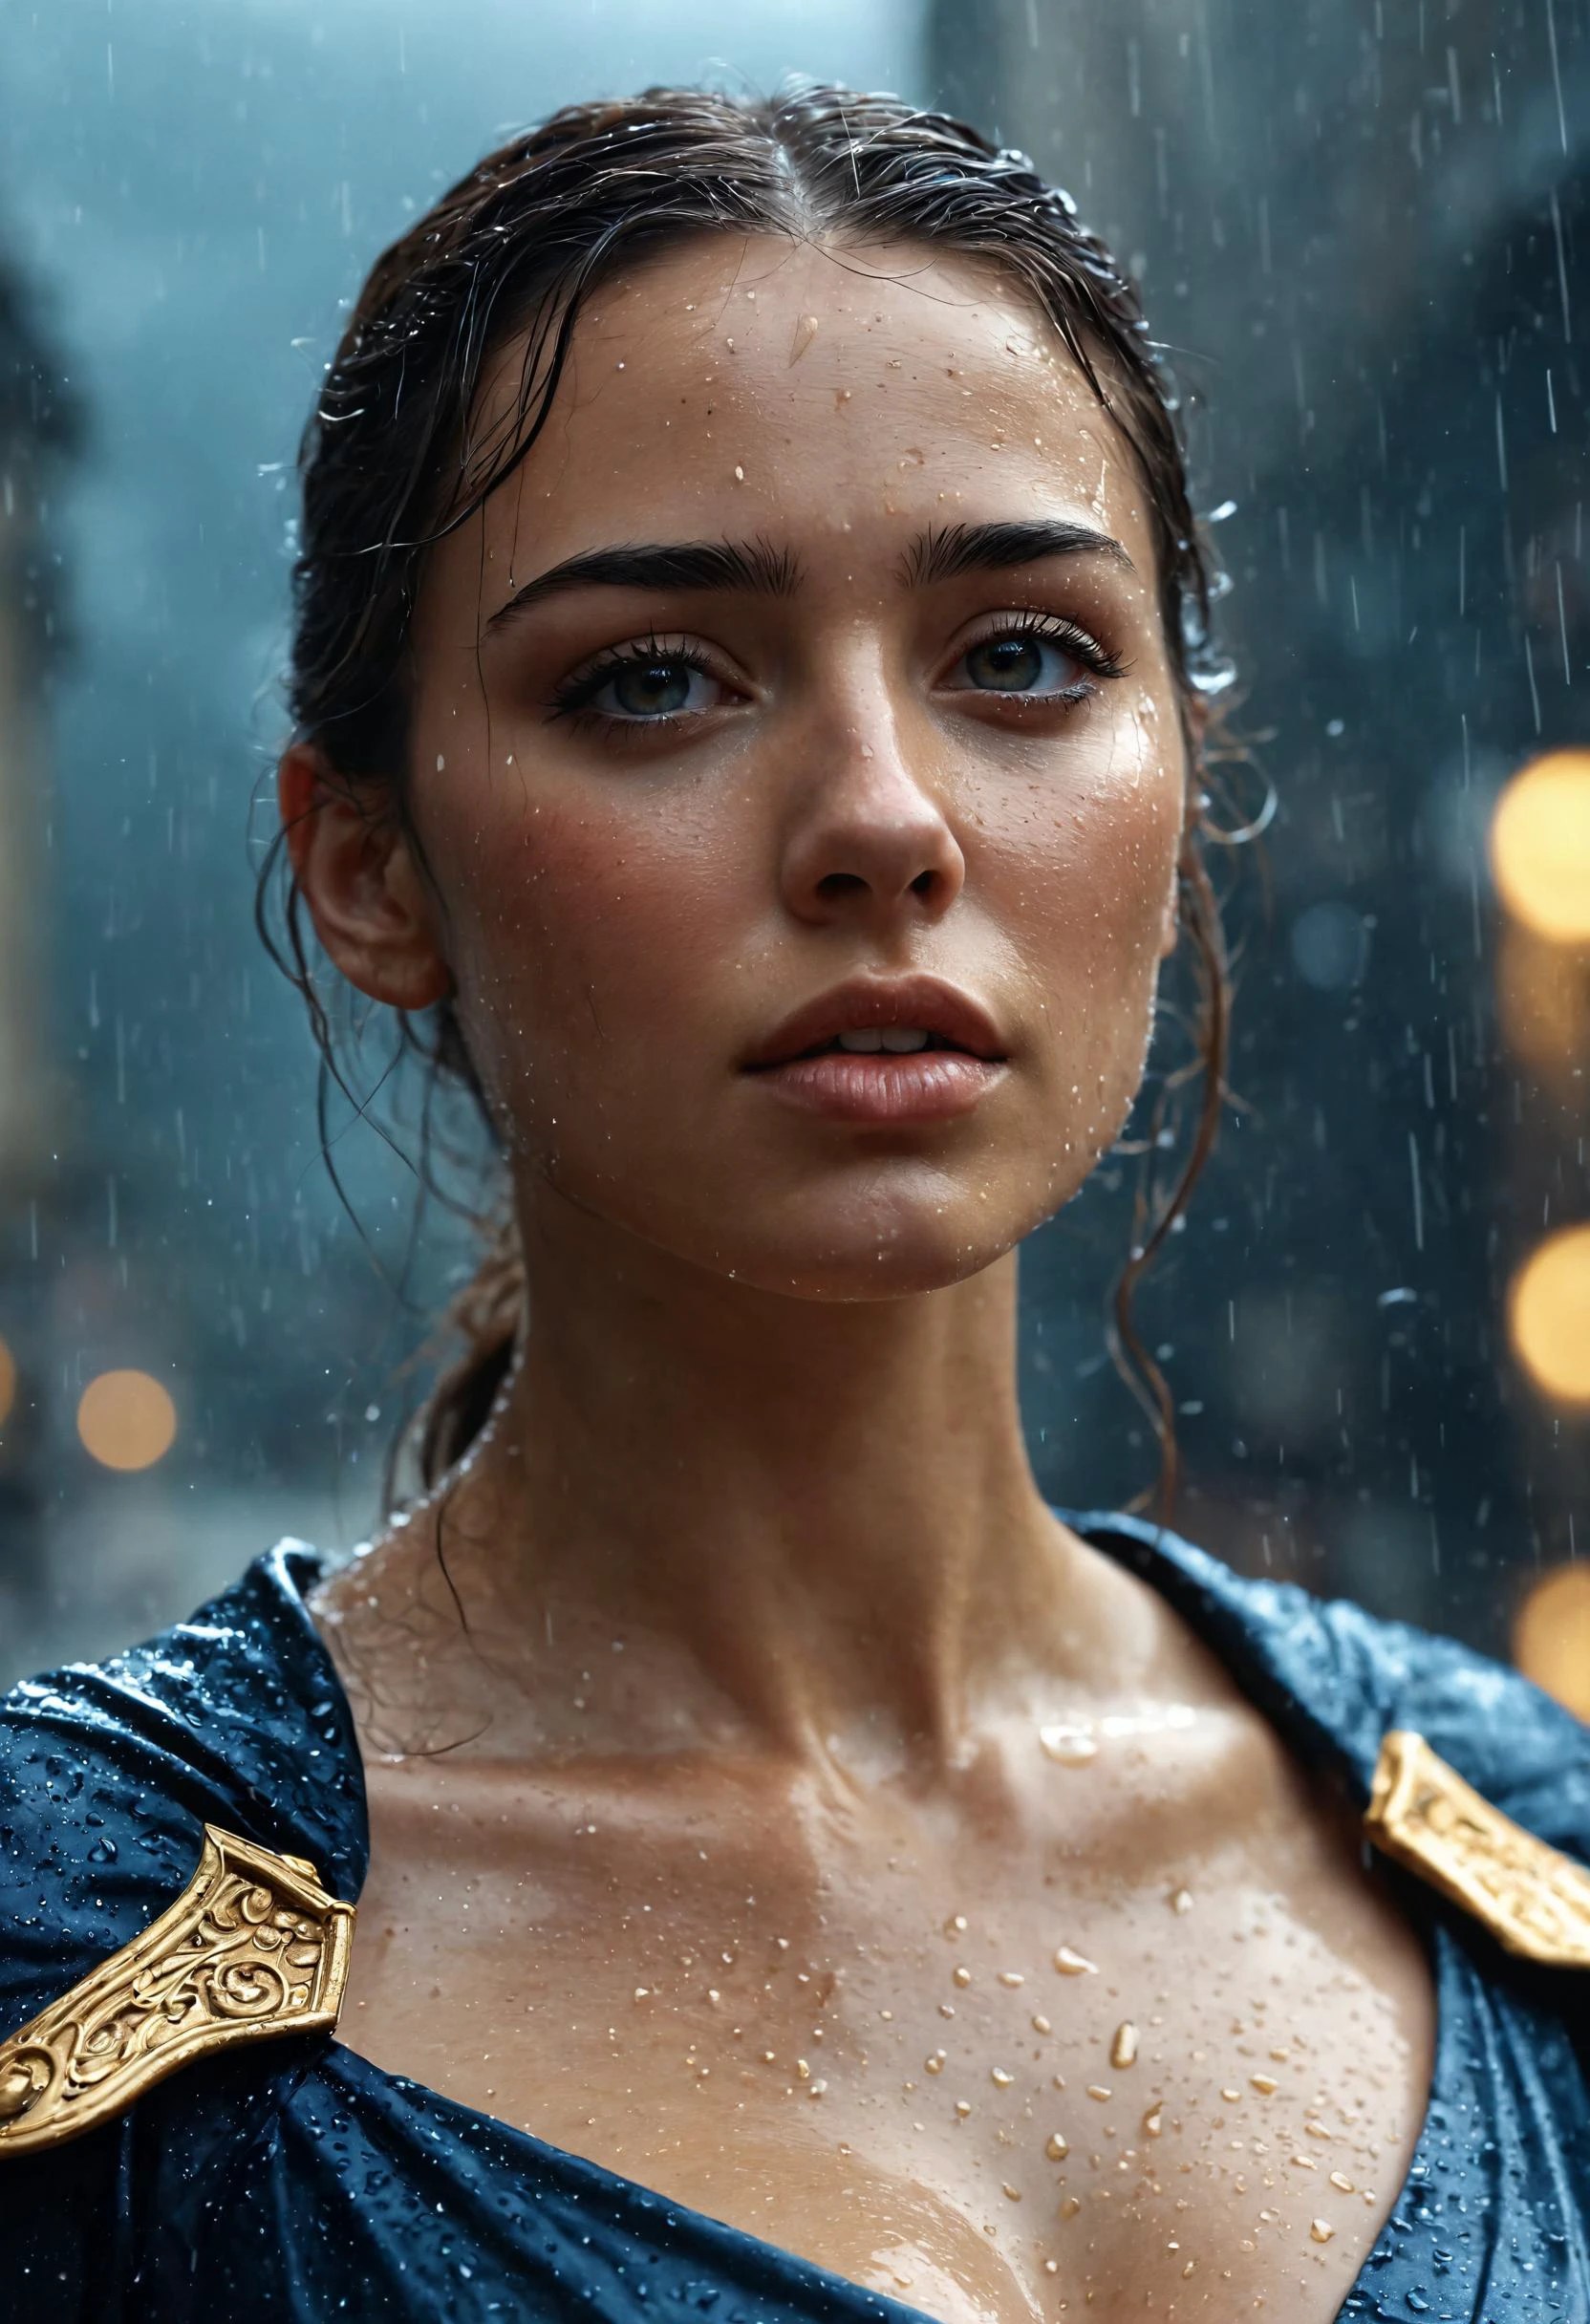 集中力のある顔の女性, ブラックゴールドドレス. 小雨の中に立っている. 彼女の上に本物の雨粒が降っている. 詳細なキャラクターイラスト, 非常に美しいです, 複雑な, 壮大な構成, 魔法のような雰囲気, 映画のような, 彩度の高い色, インスパイヤされた, とても感動的, オリジナル